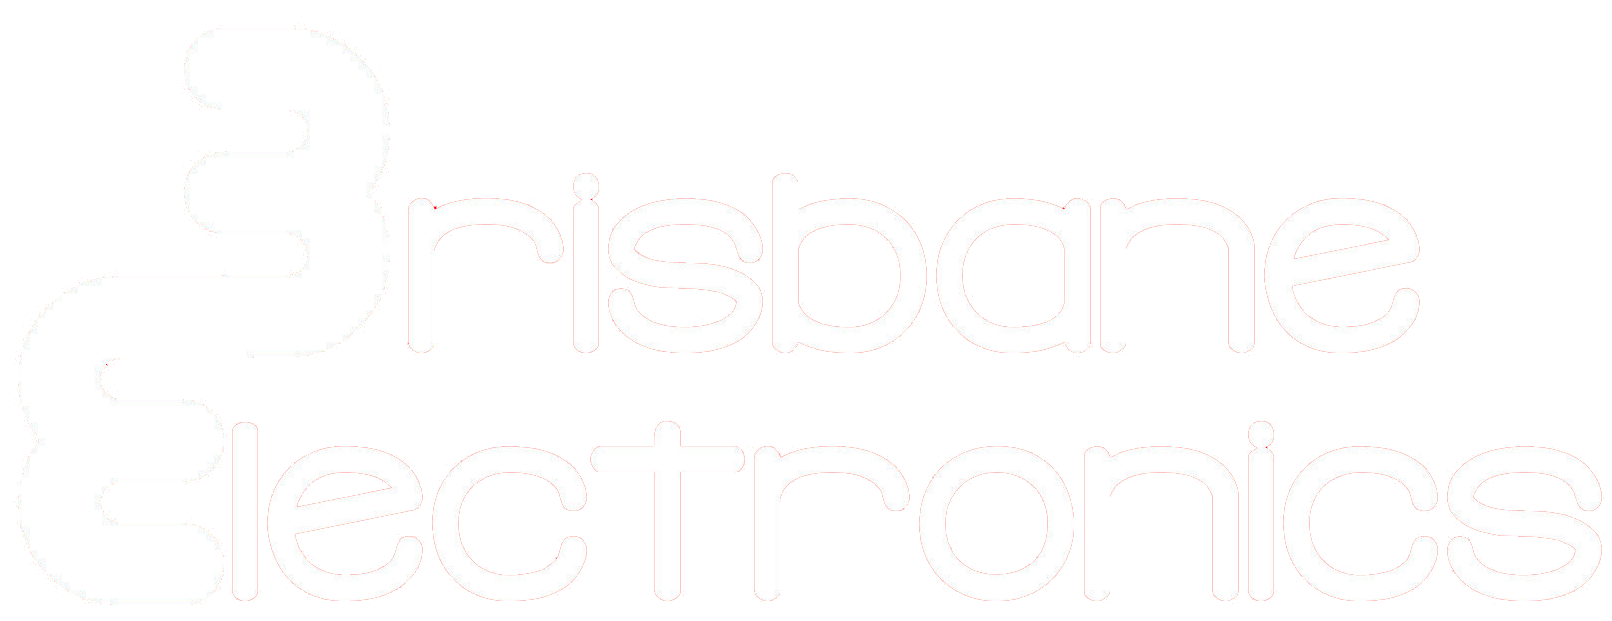 Brisbane Electronics